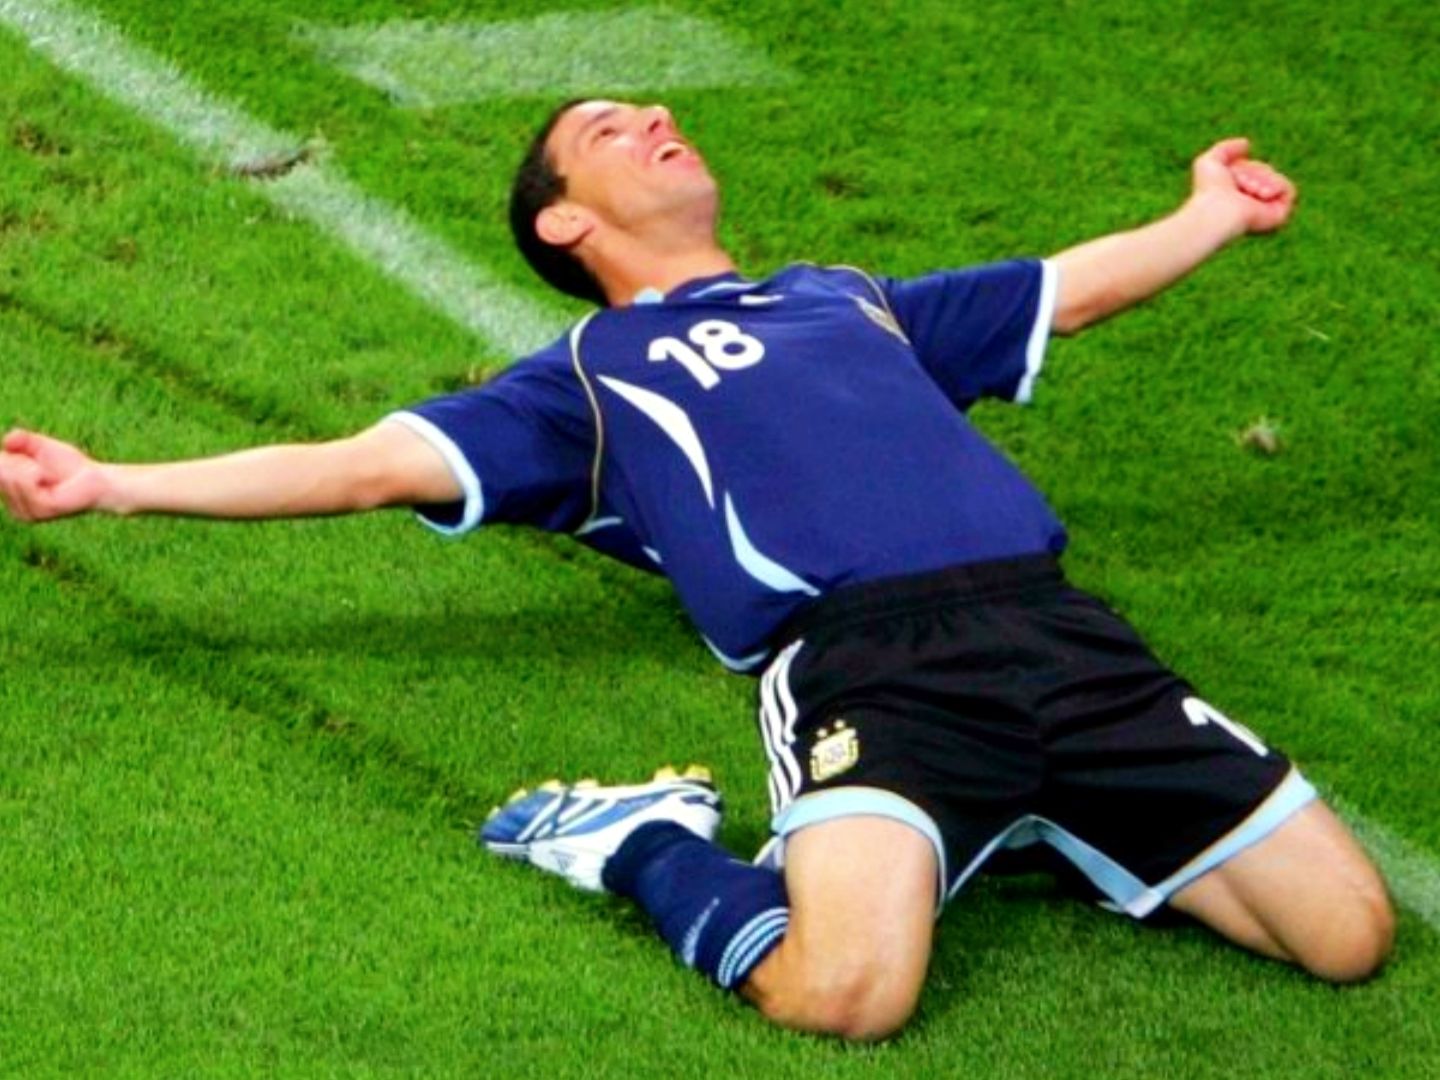 足球比赛中进球,球员使用滑跪动作庆祝,膝盖不会感到疼吗?